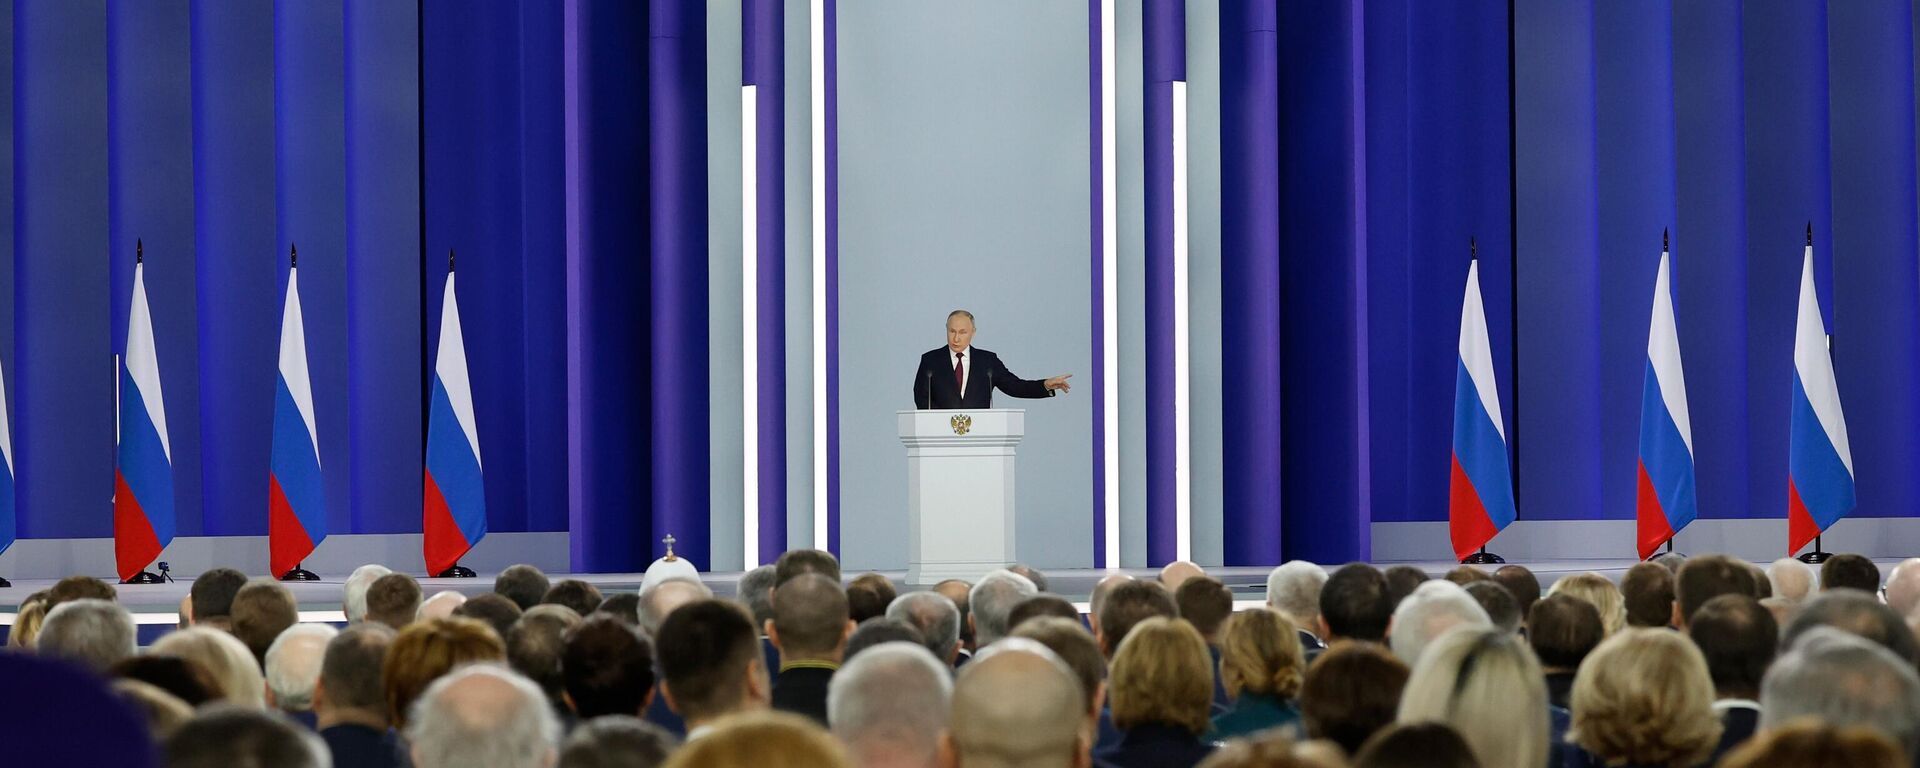 El presidente ruso, Vladímir Putin, pronuncia su discurso anual ante la Asamblea Federal el 21 de febrero de 2023 - Sputnik Mundo, 1920, 21.02.2023